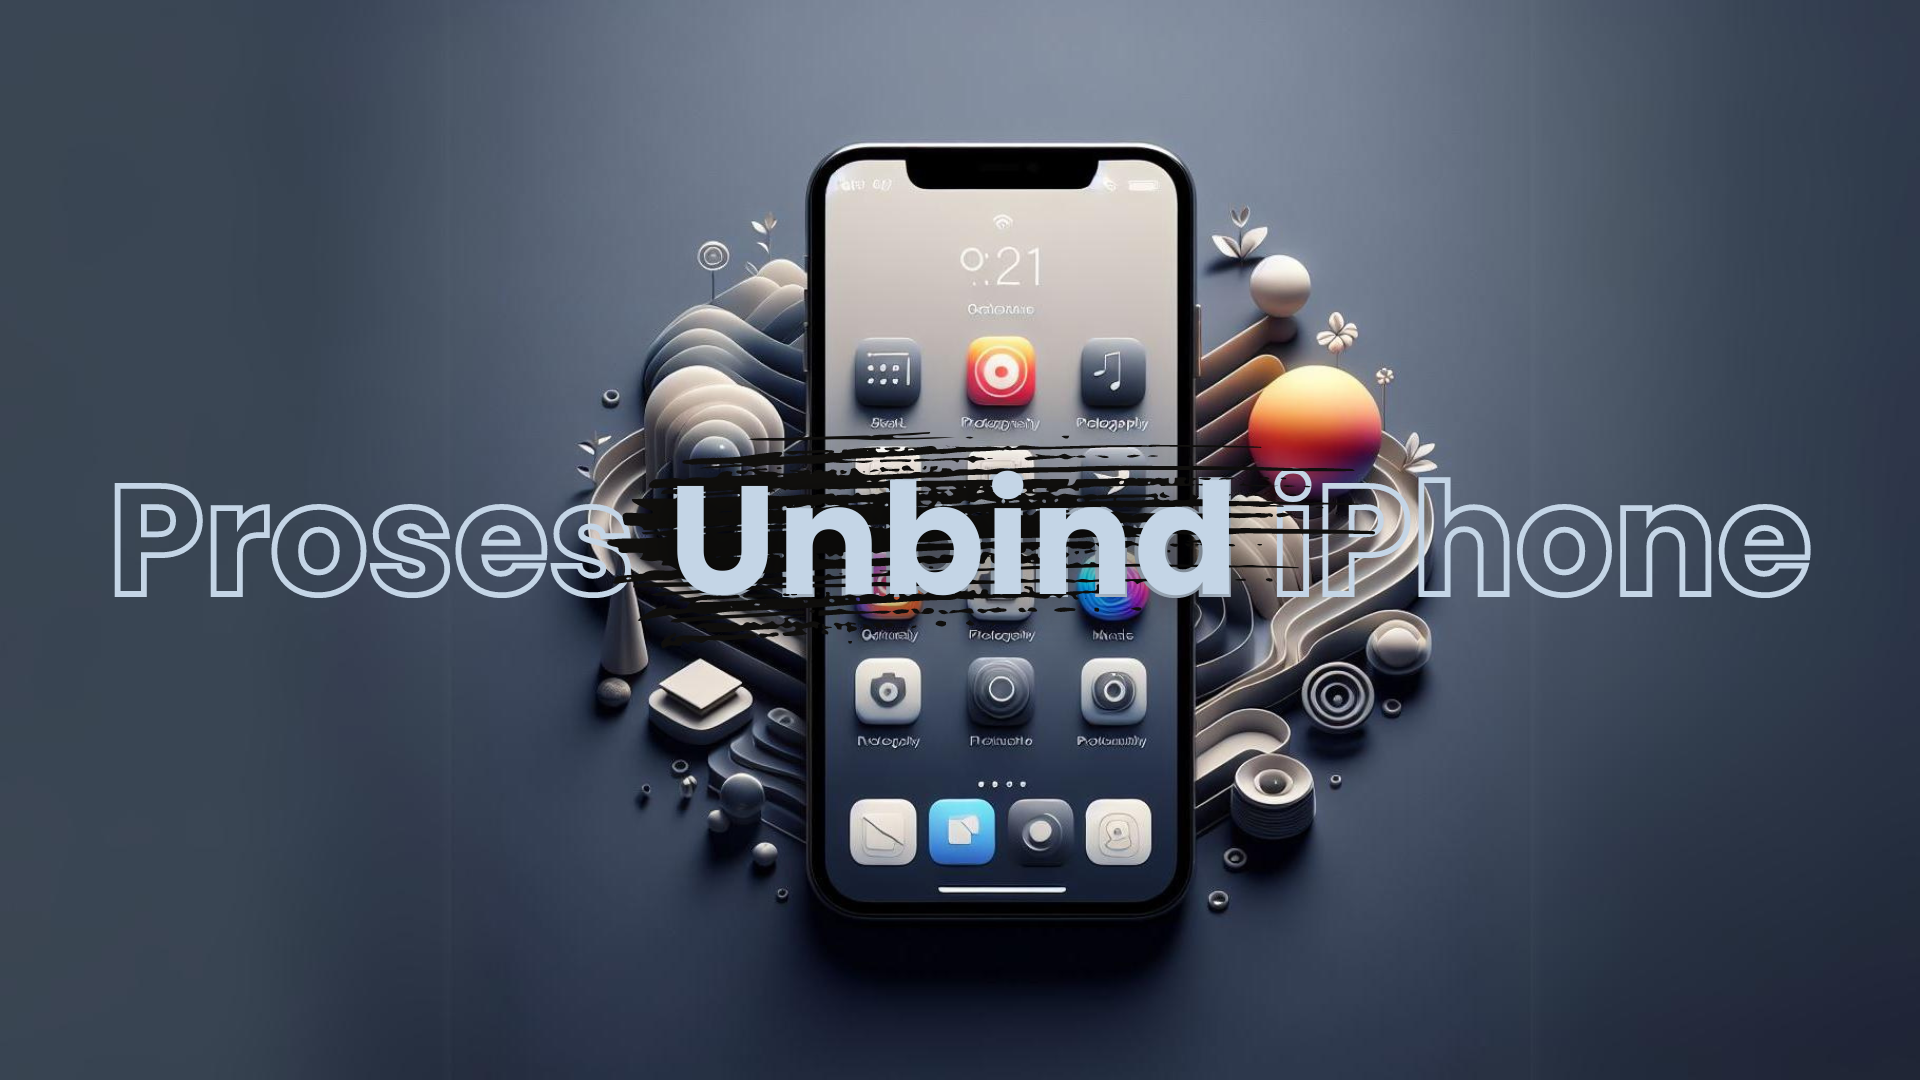 Proses Unbind pada iPhone: Cara Praktis dan Aman